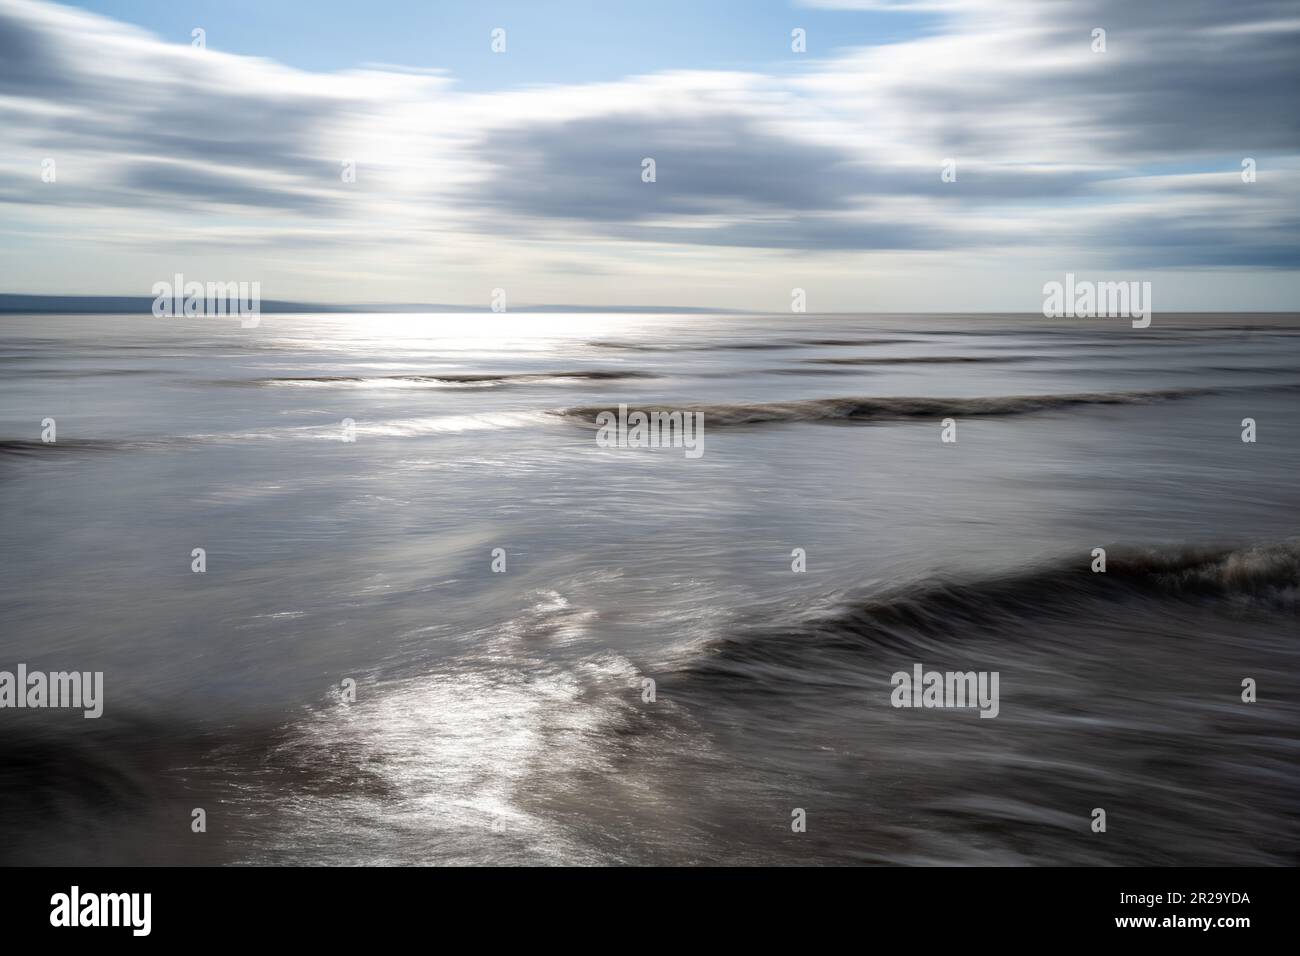 Movimento intenzionale fotocamera spiaggia e mare abstract Foto Stock